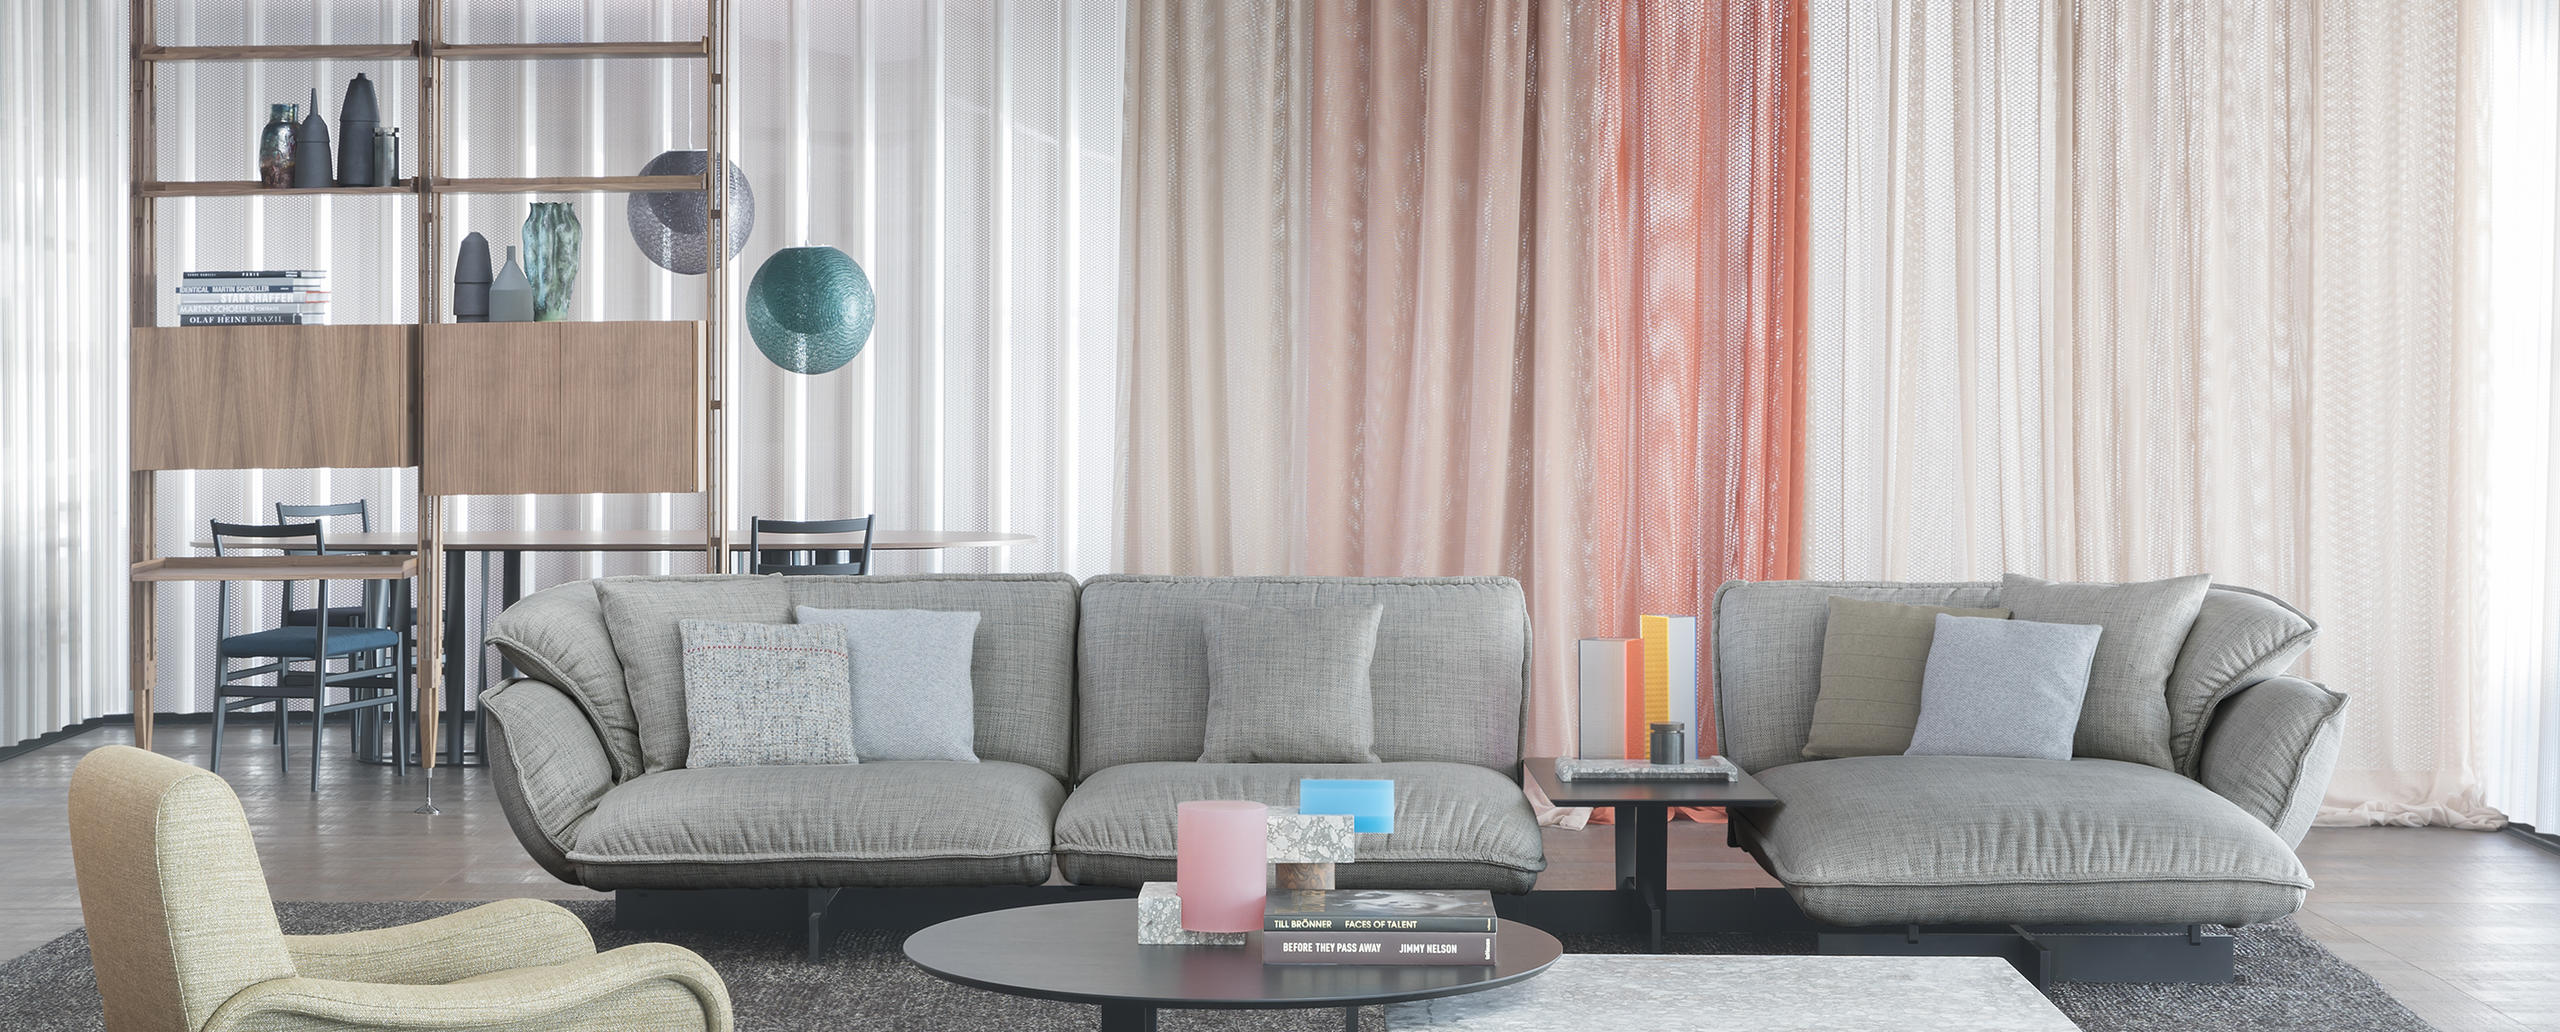 Le Beam Sofa System s’évolue en une nouvelle version, où les dimensions s’agrandissent pour le rendre encore plus scénique.